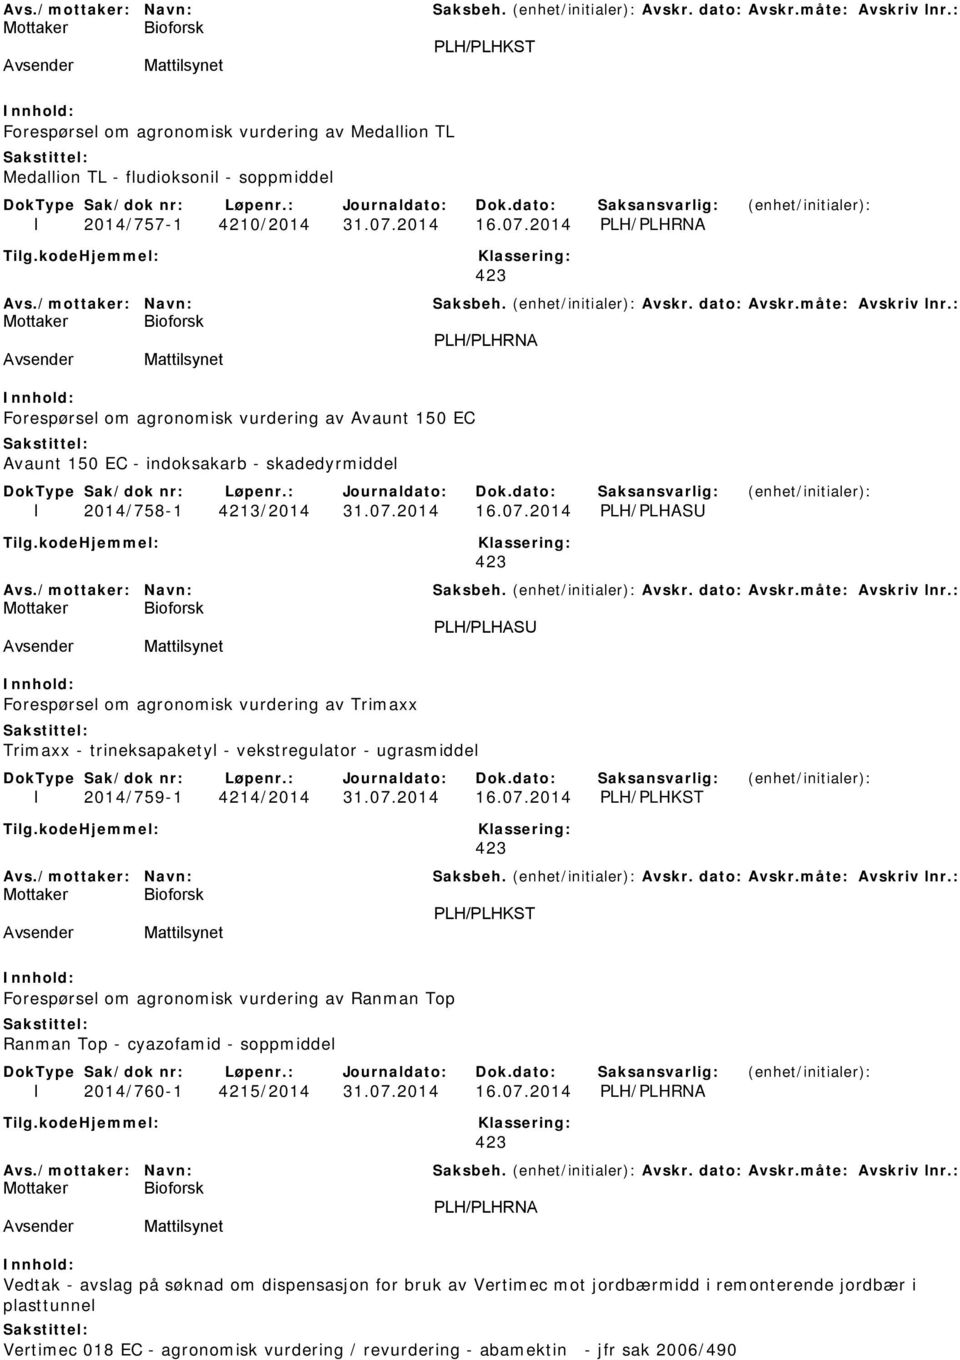 07.2014 16.07.2014 PLH/PLHKST PLH/PLHKST Forespørsel om agronomisk vurdering av Ranman Top Ranman Top - cyazofamid - soppmiddel I 2014/760-1 4215/2014 31.07.2014 16.07.2014 PLH/PLHRNA PLH/PLHRNA